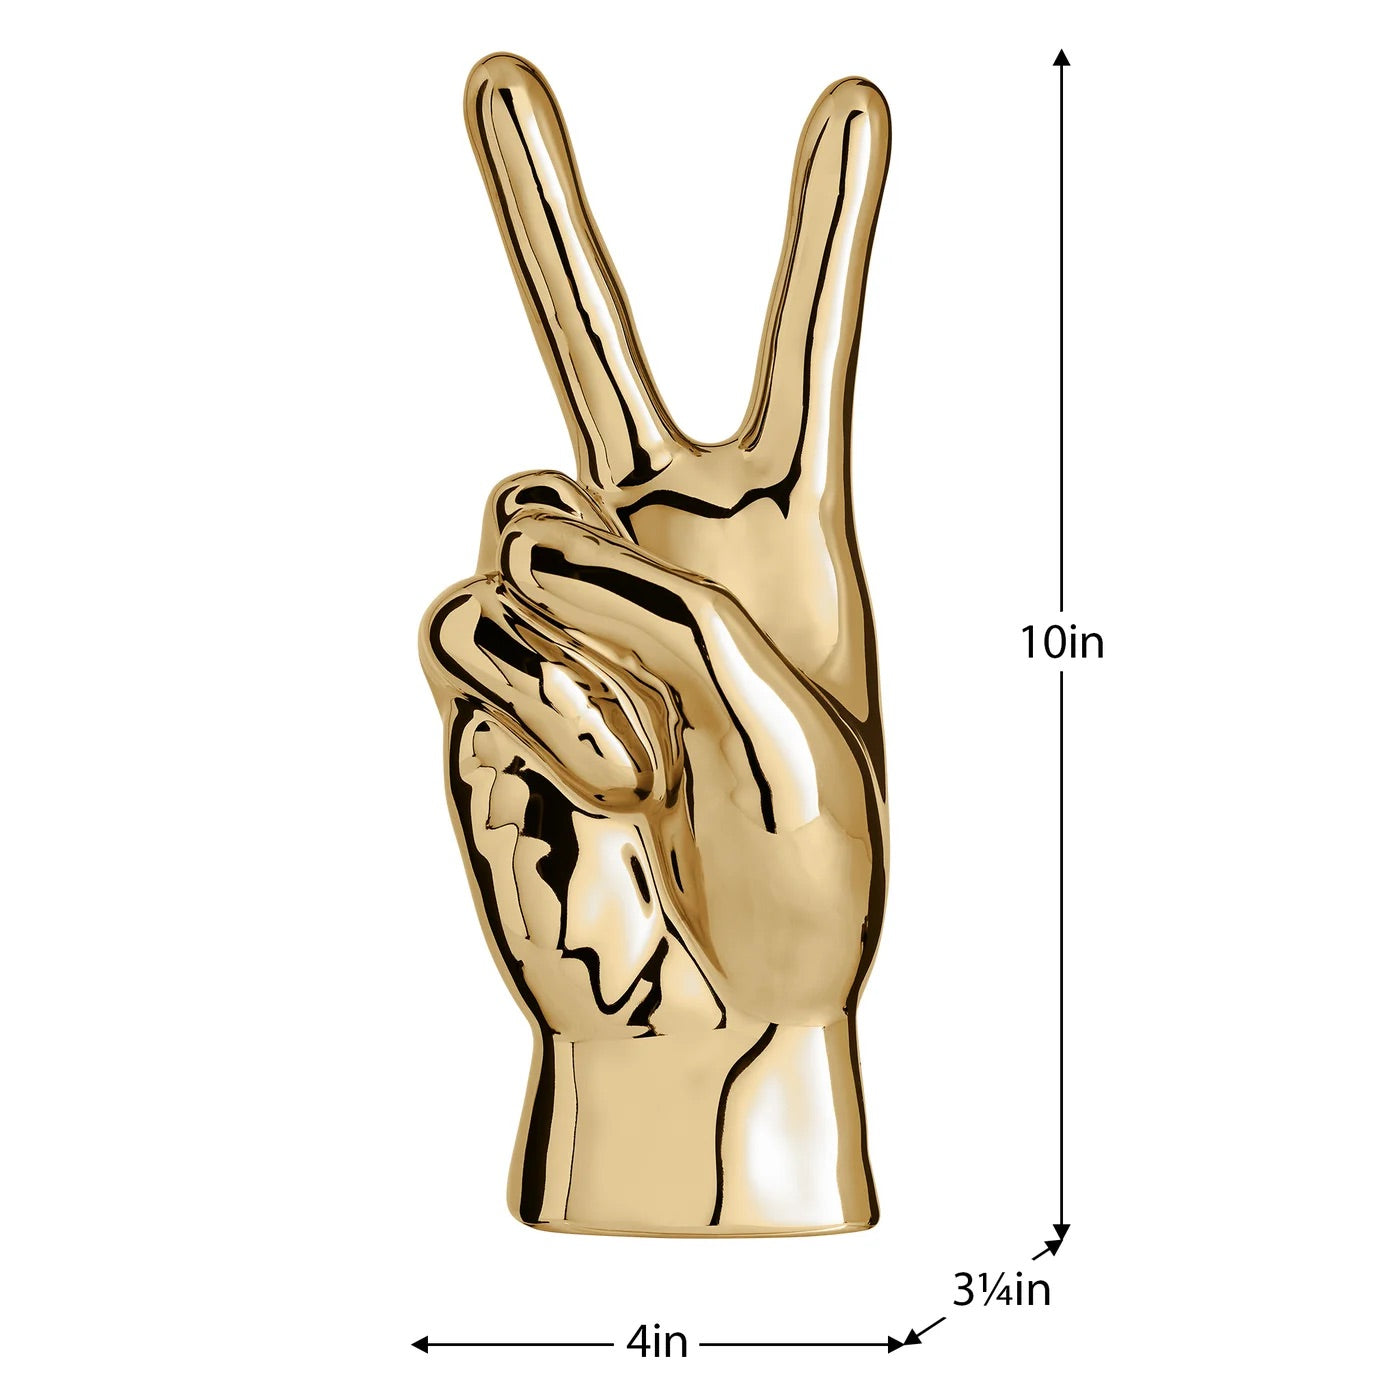 SCULPTURE - GESTURE HAND (GOLD CERAMIC)